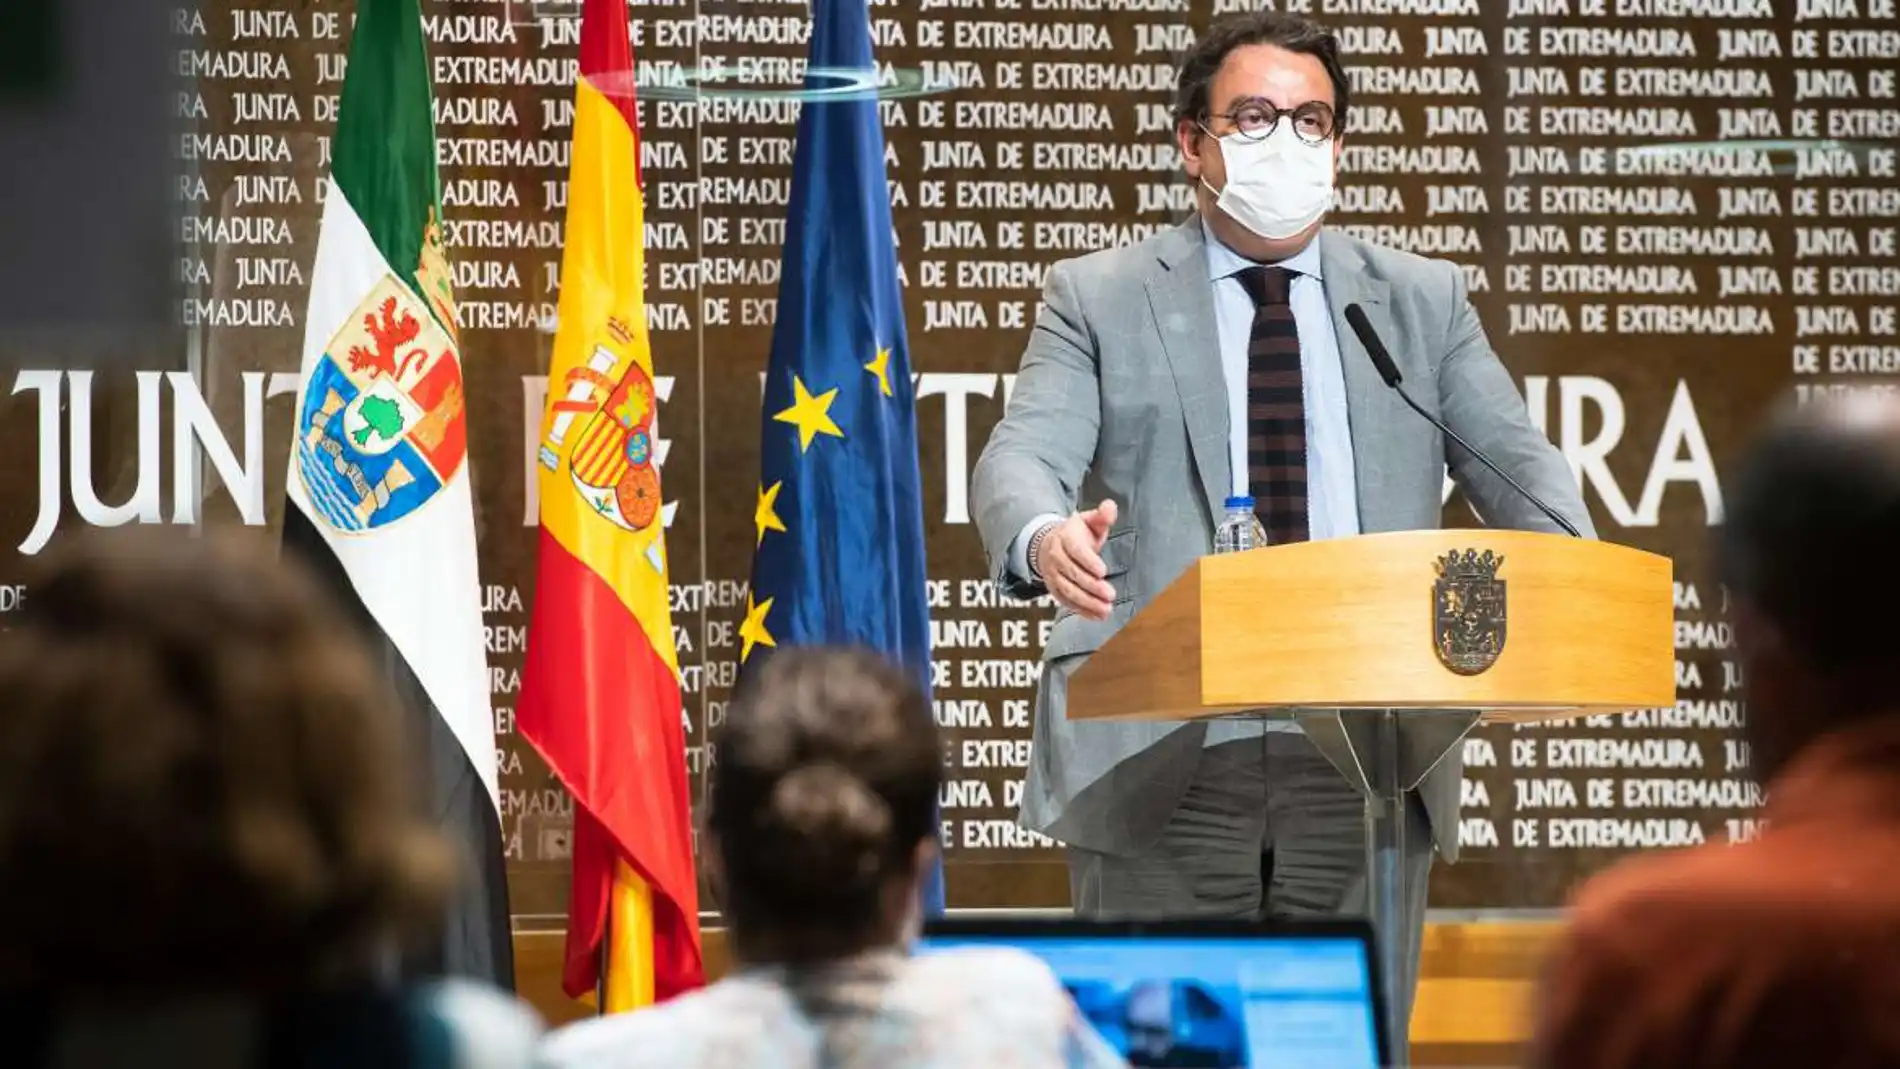 La Junta de Extremadura pedirá al TSJEX mantener los actuales niveles de alerta aunque quiere rebajar las restricciones del semáforo covid 